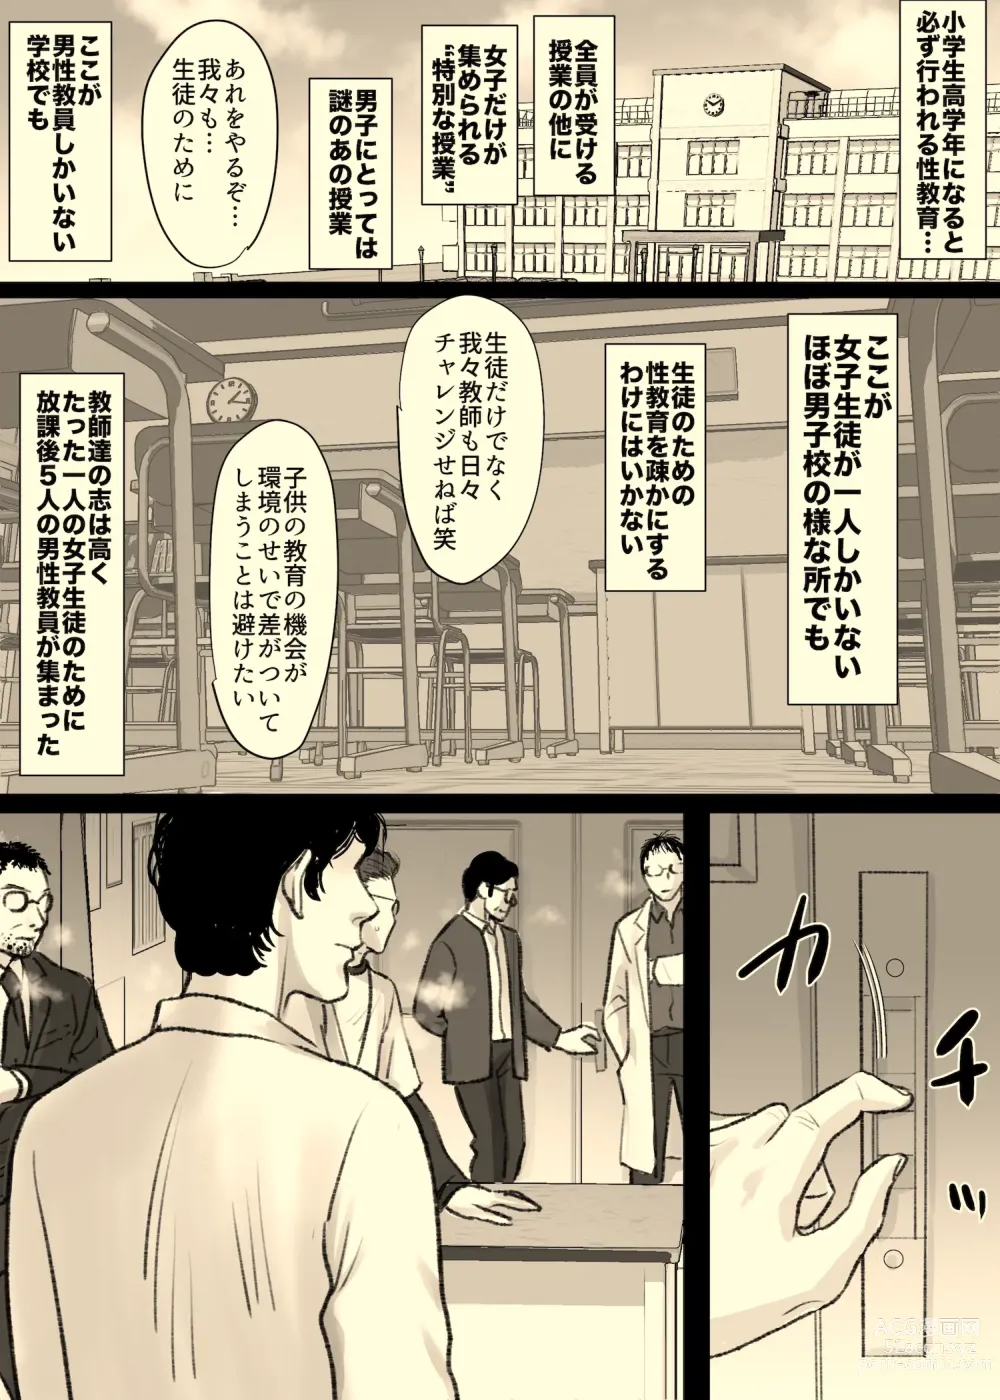 Page 2 of doujinshi Rokushamendan